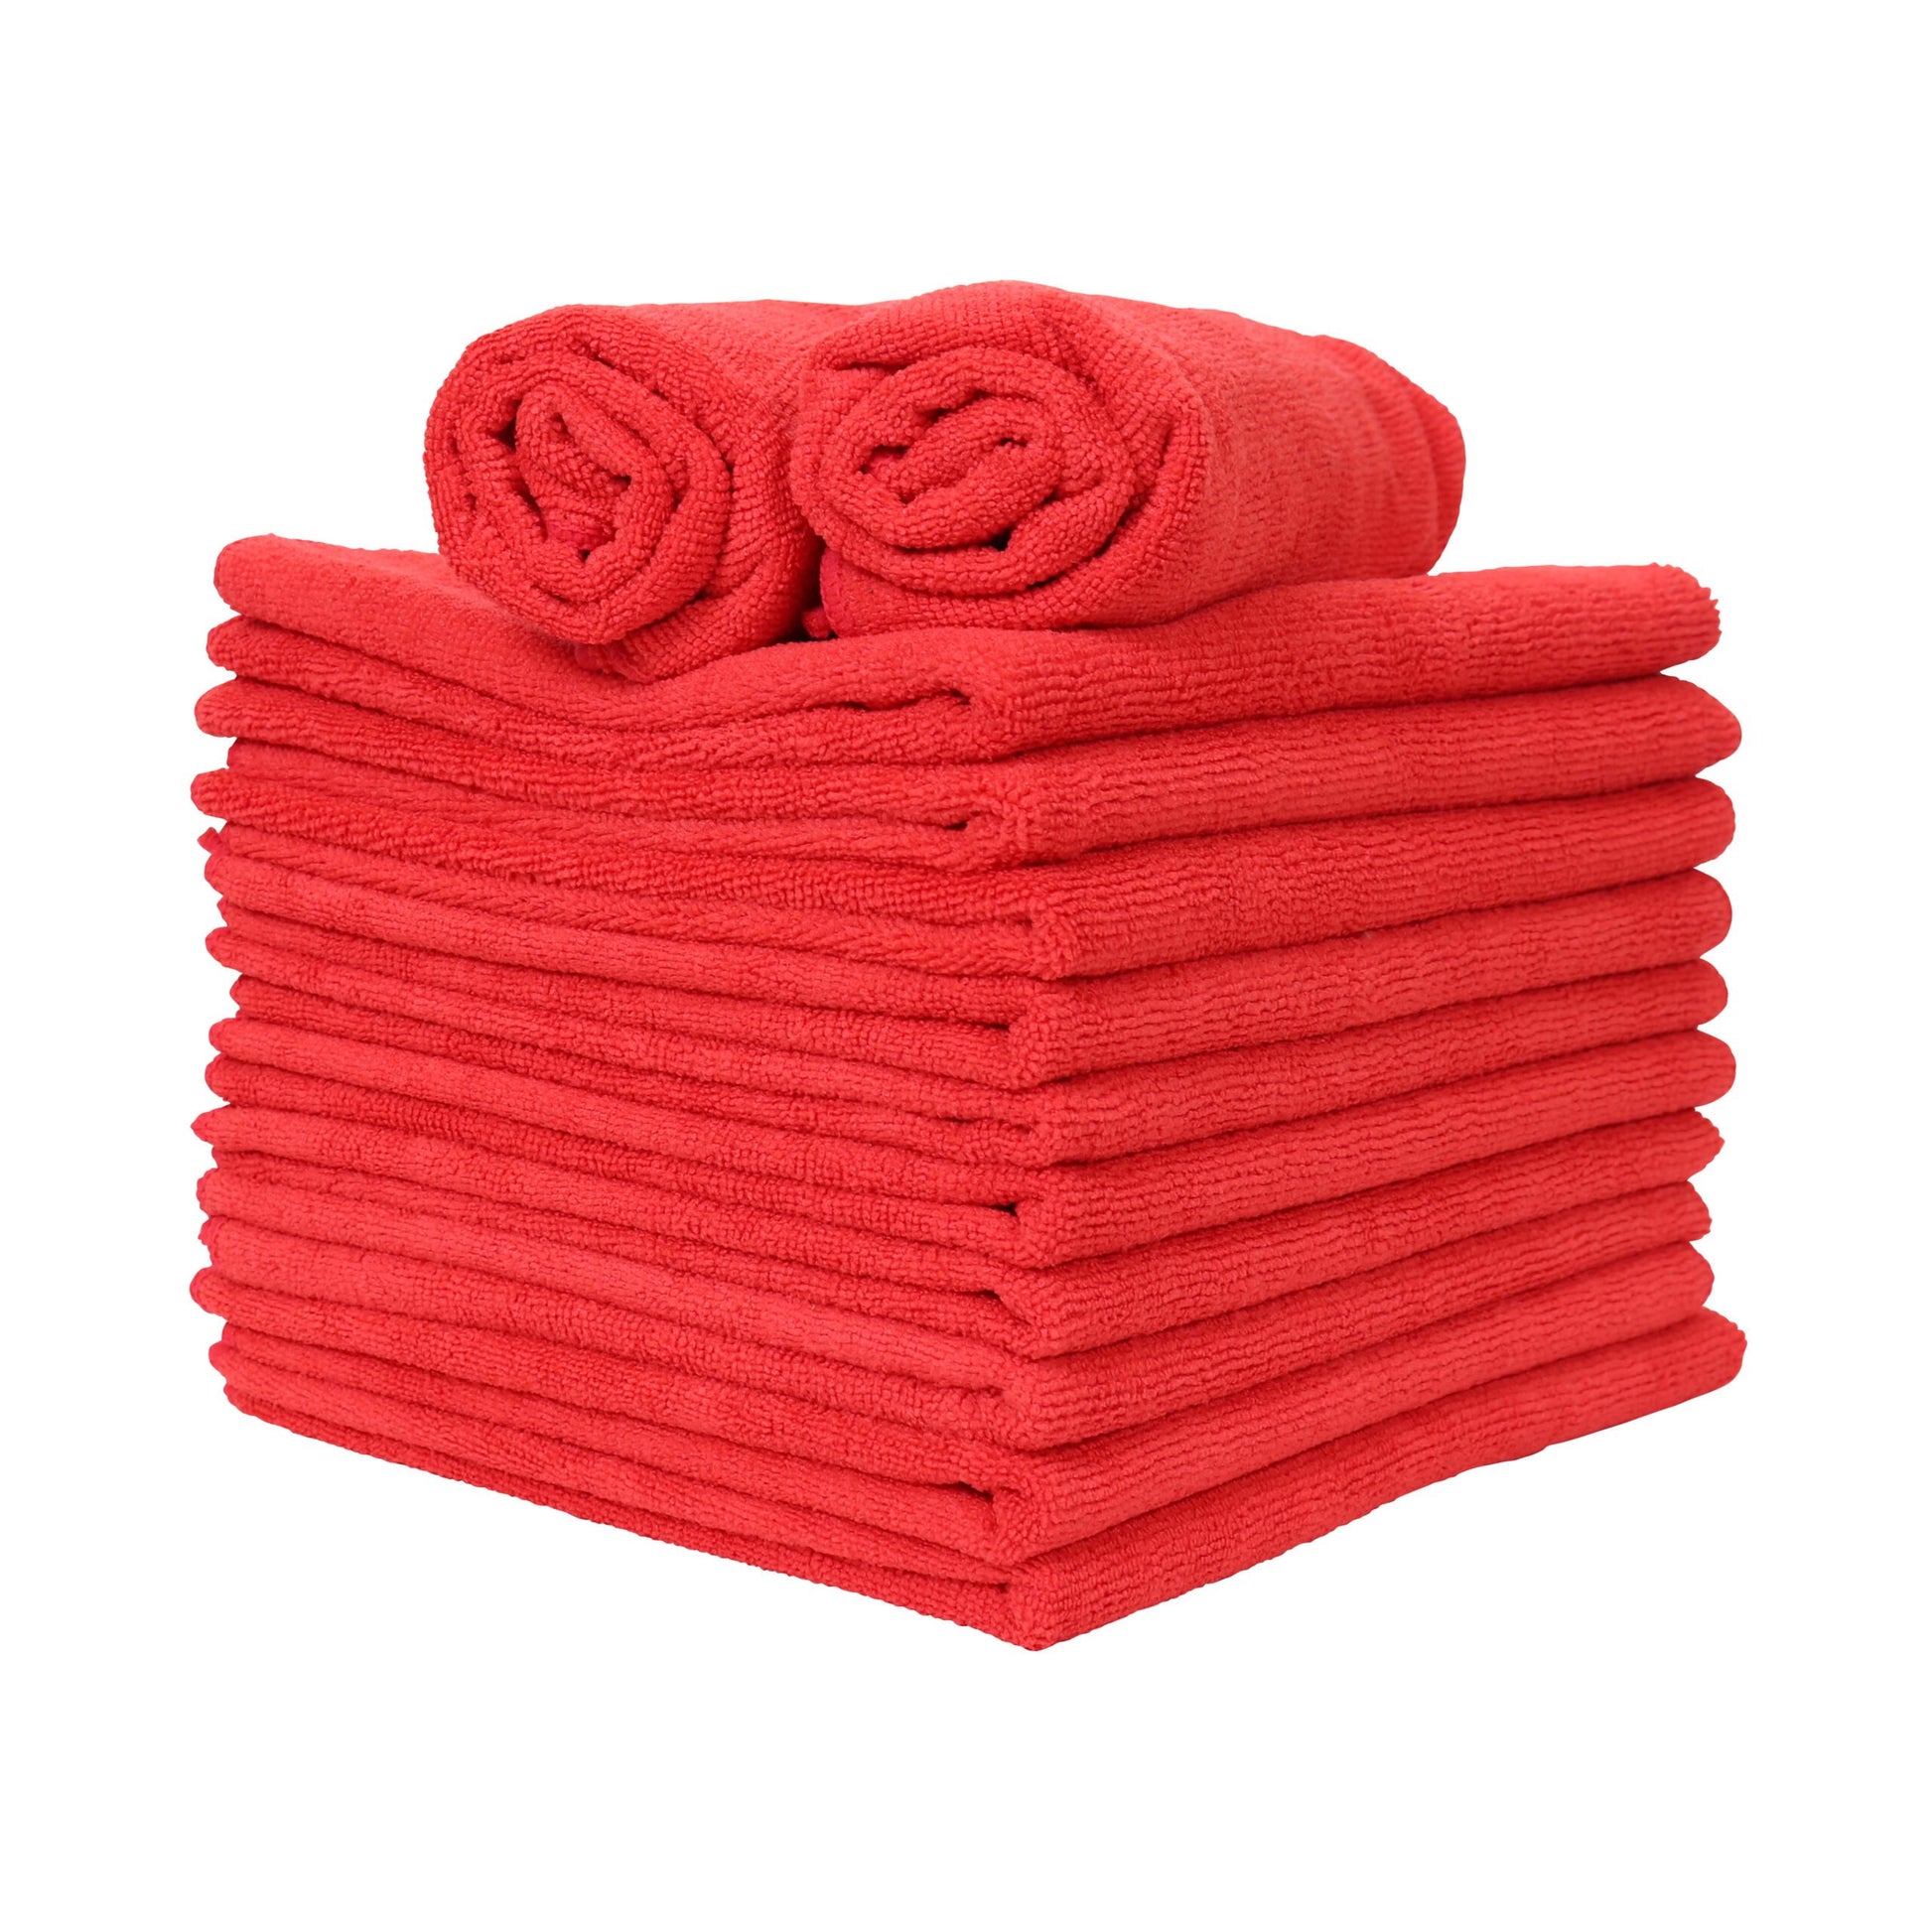 Microfiber Car Wash Towels - Red